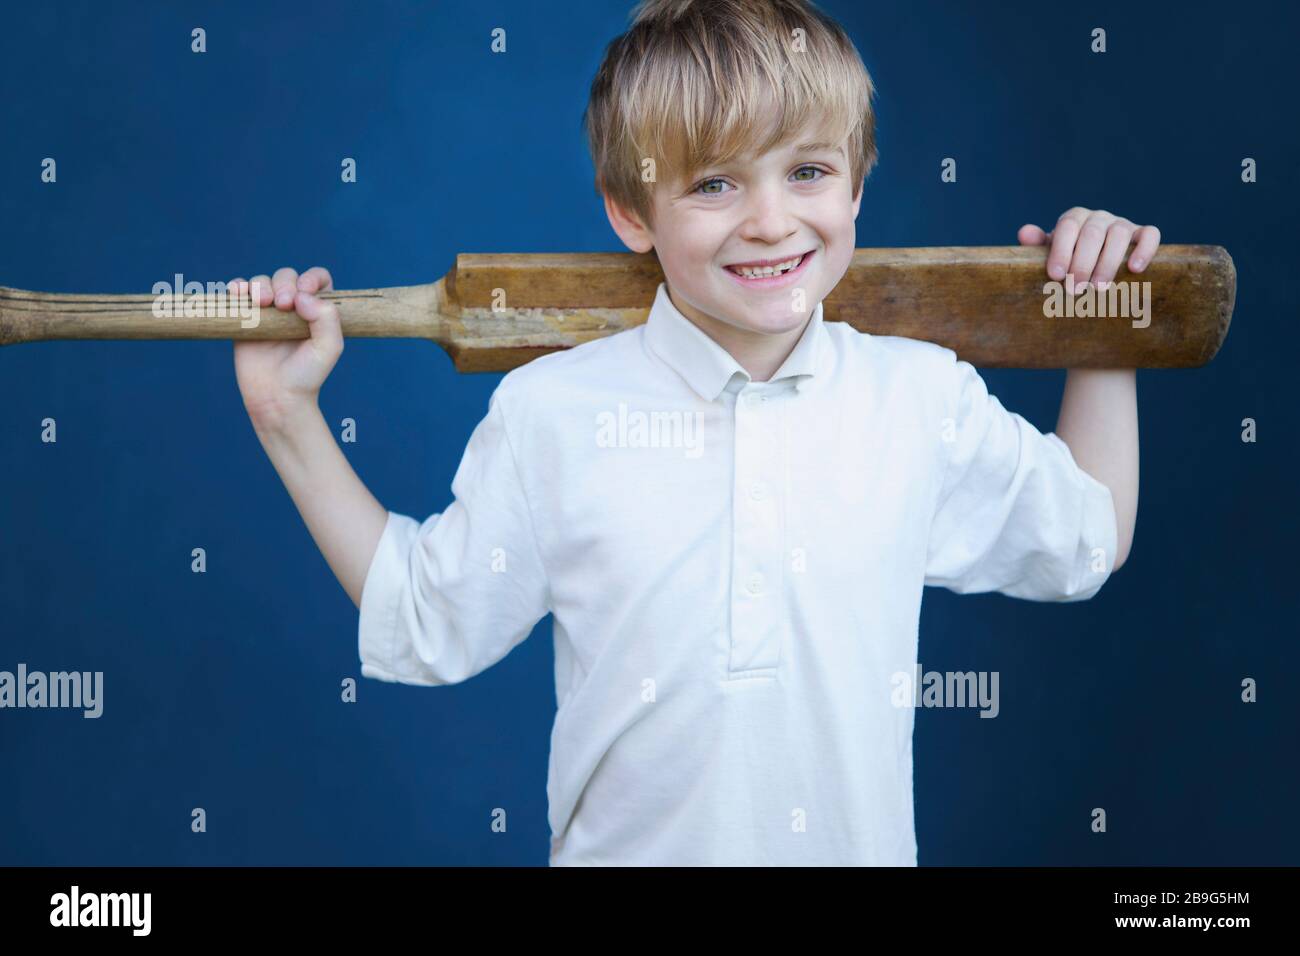 Portrait lächelnder Junge mit Kricketschläger Stockfoto